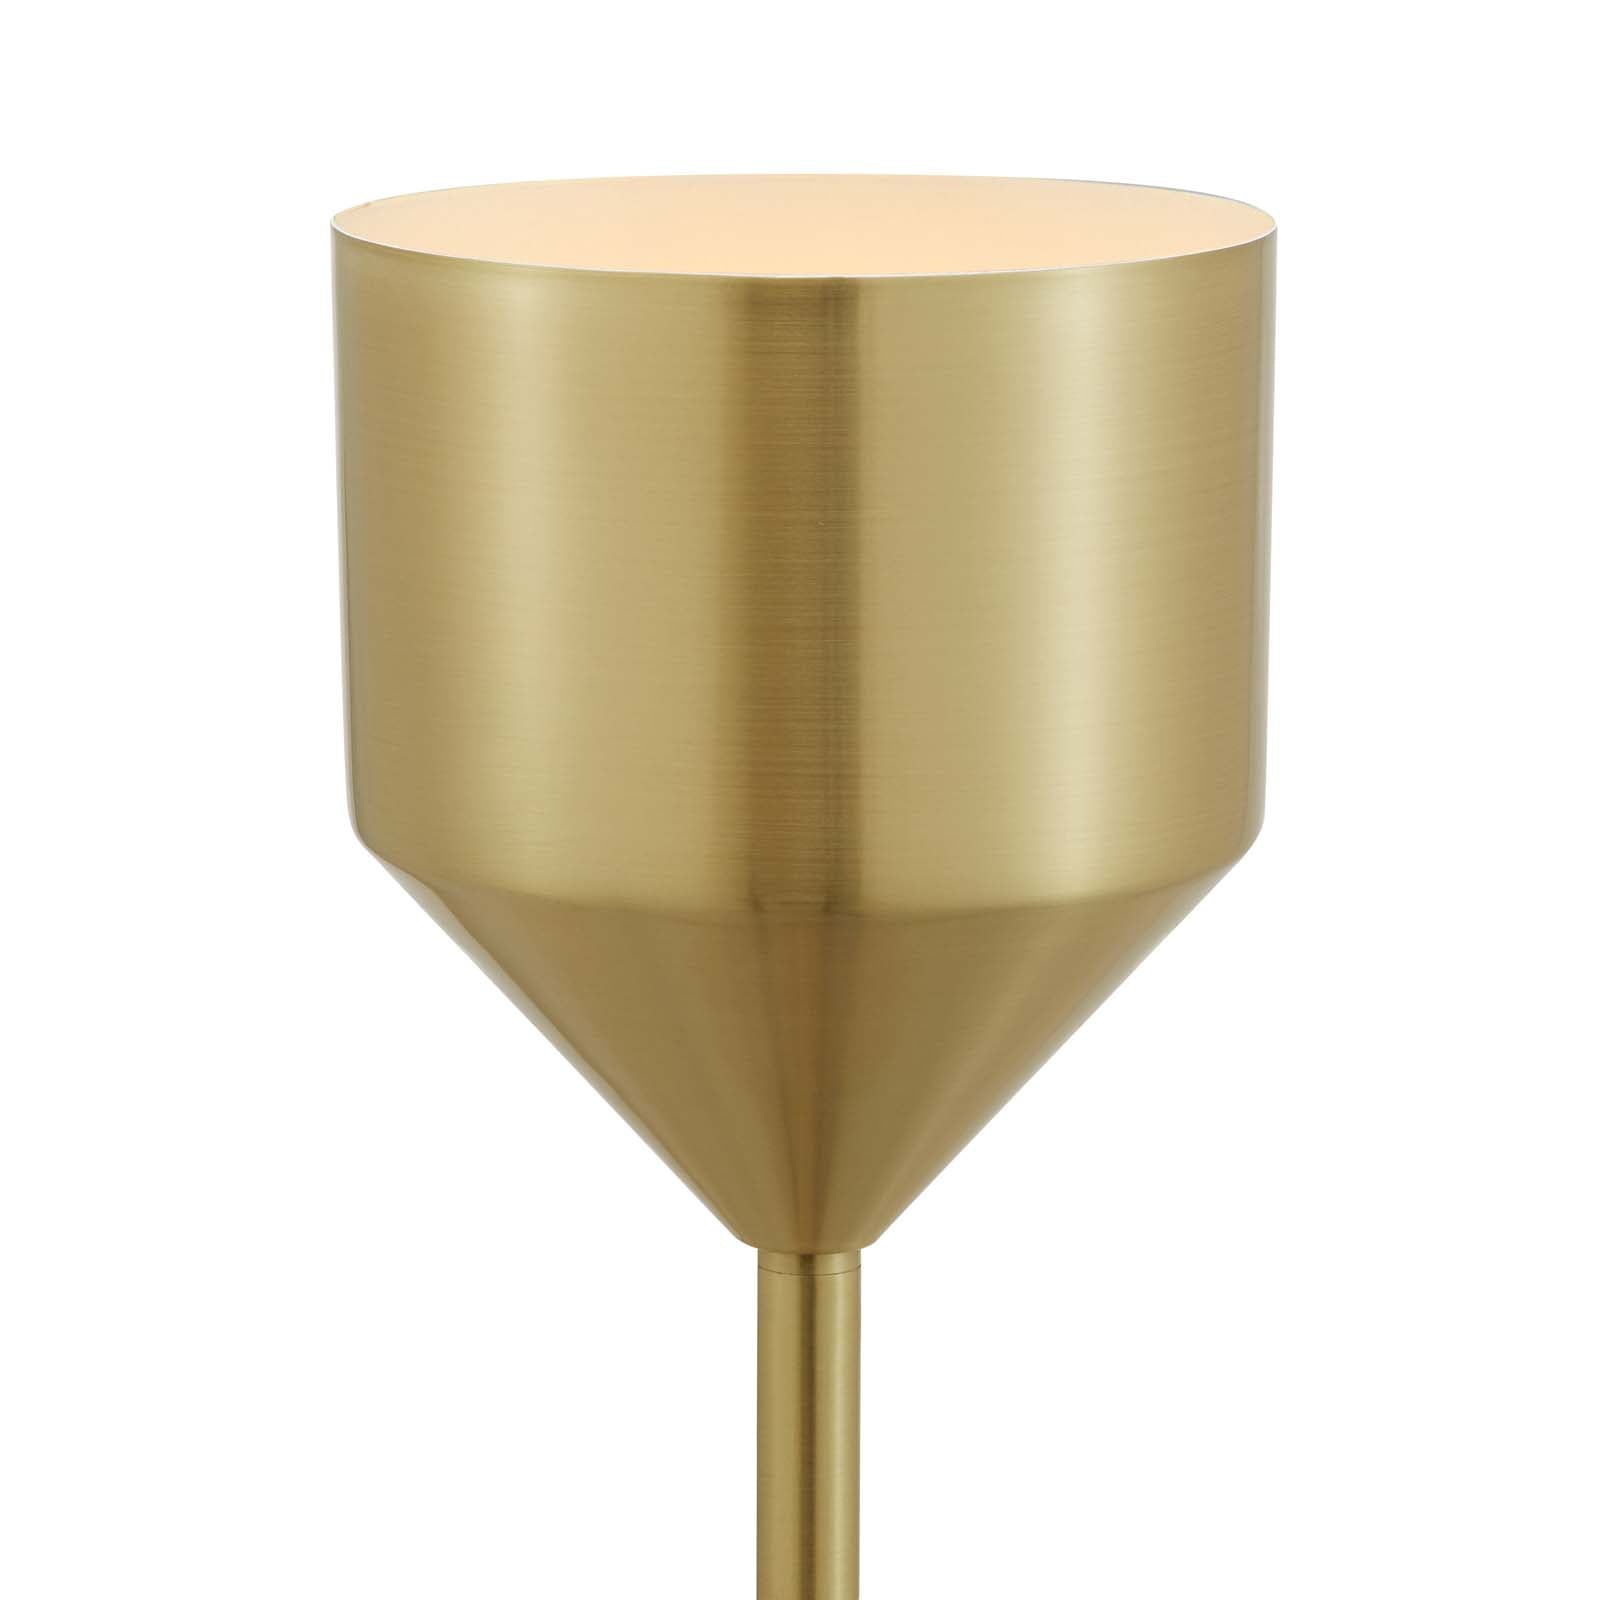 Modway Floor Lamps - Kara Standing Floor Lamp Gold